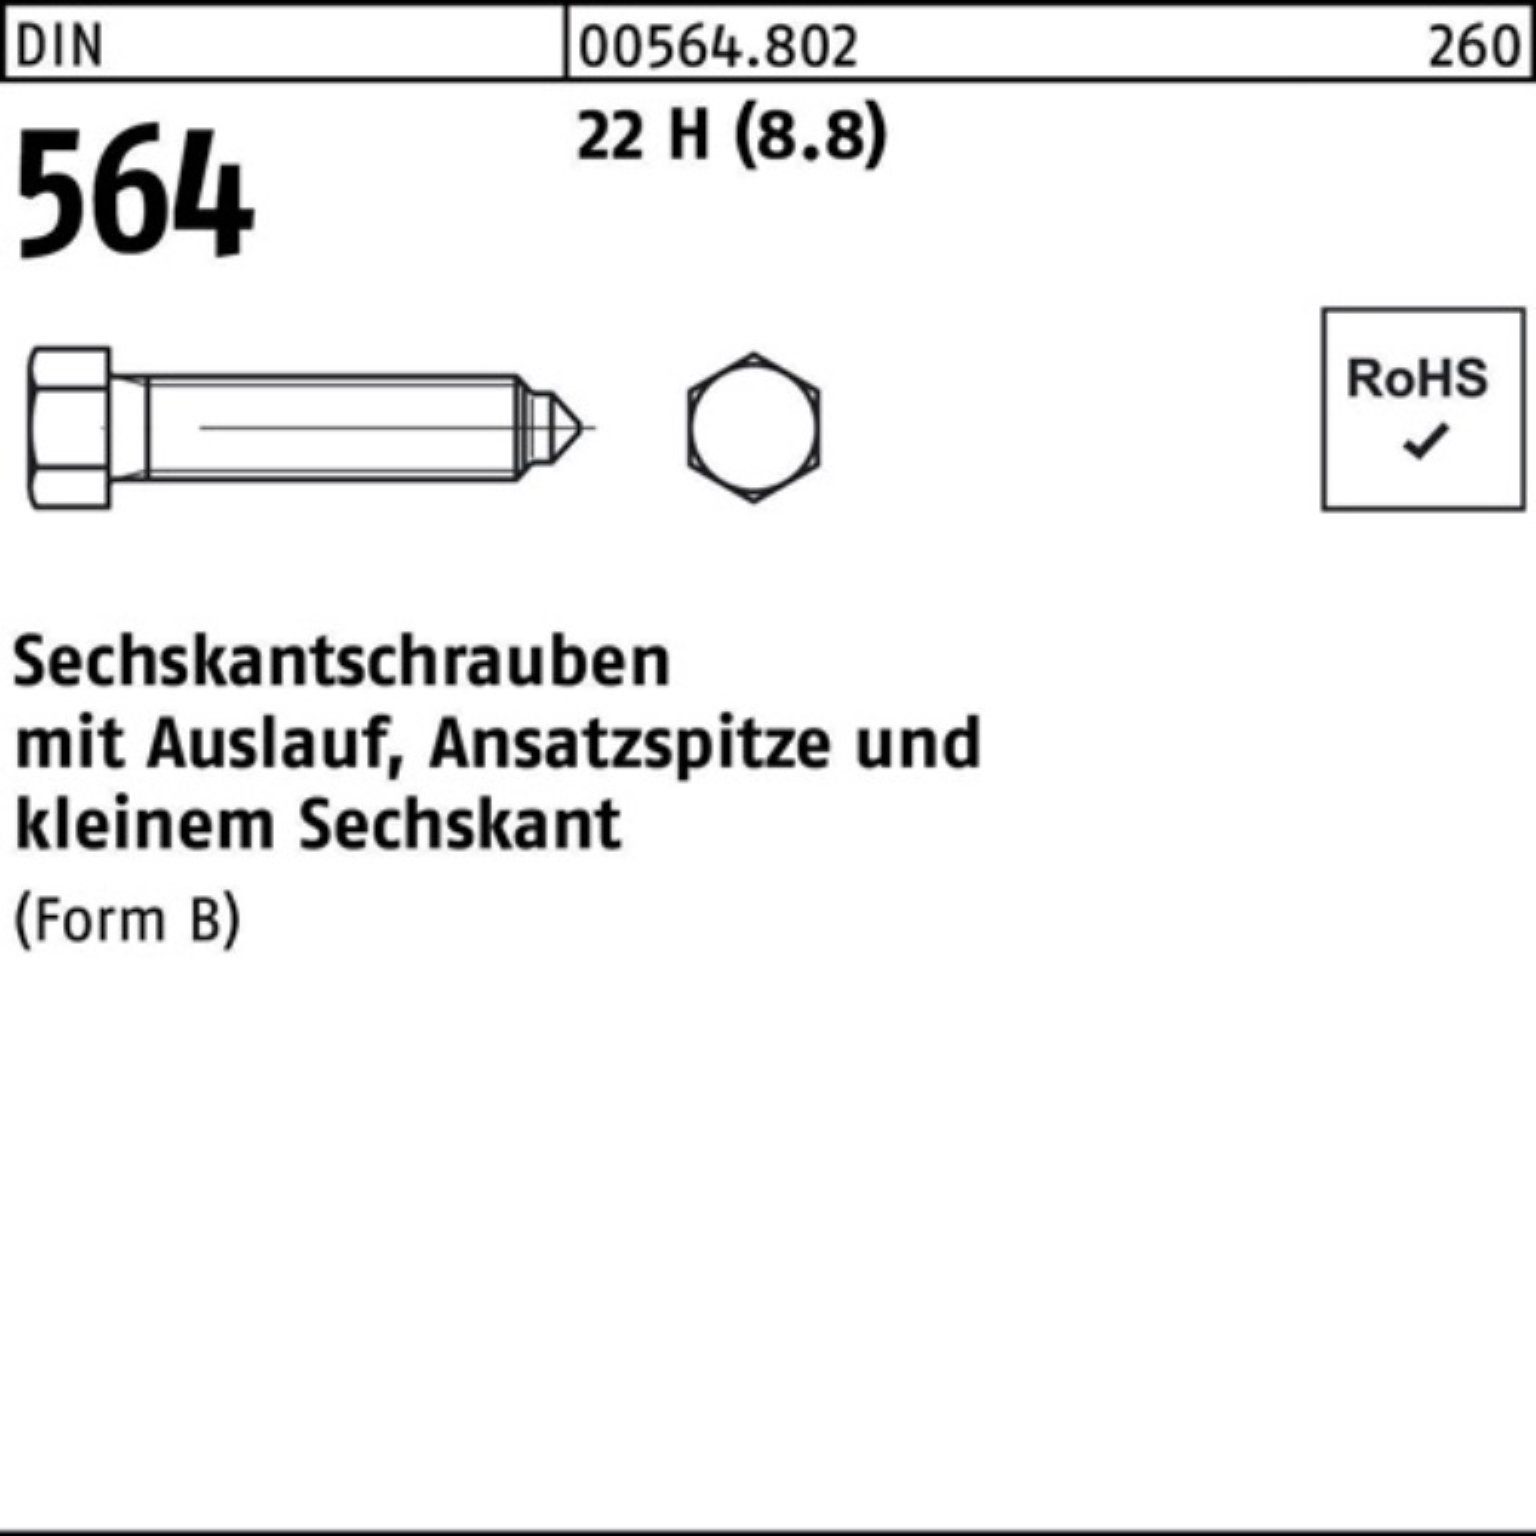 DIN Sechskantschraube 25 Ansatzspitze/Auslauf 100er Sechskantschraube Pack Reyher 6x 22 BM 564